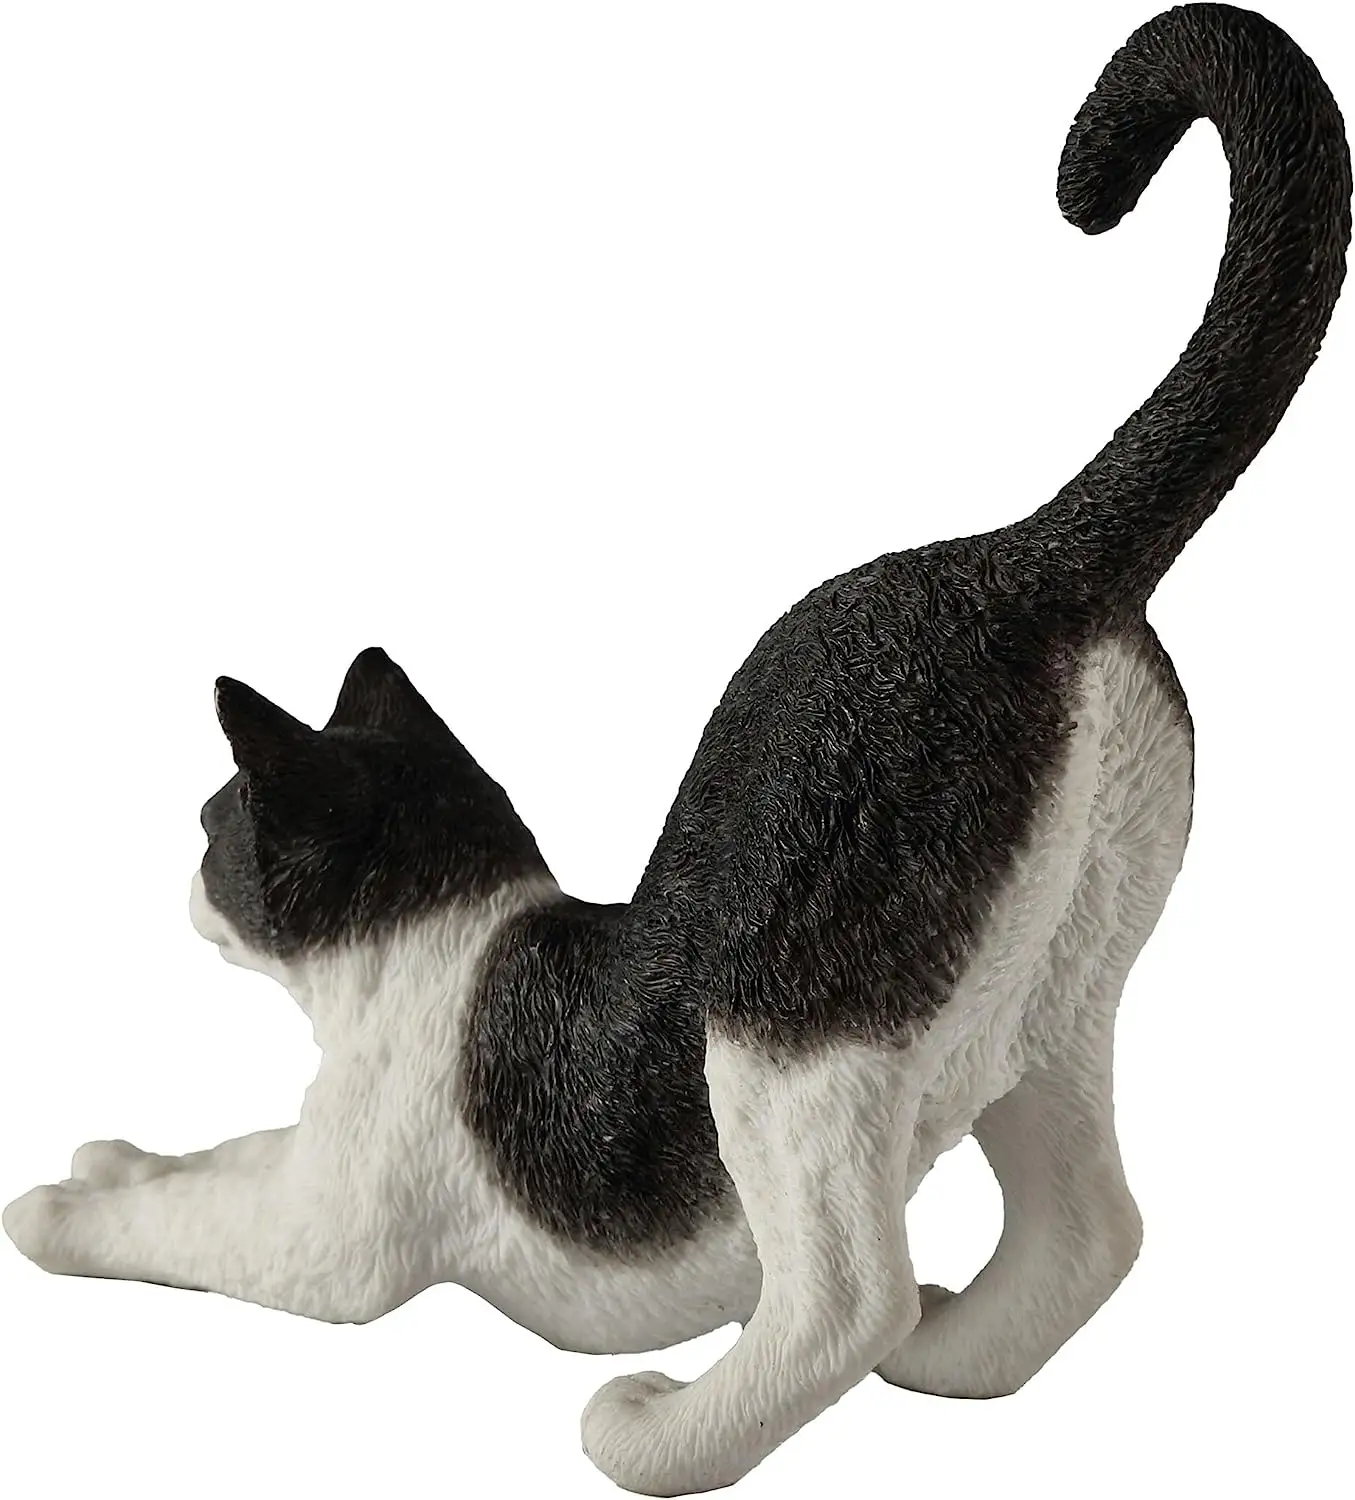 รูปปั้นแมวเรซินสีดำสีขาว8นิ้วทำมือระบายสีรูปปั้นสัตว์ทำจากเรซิน